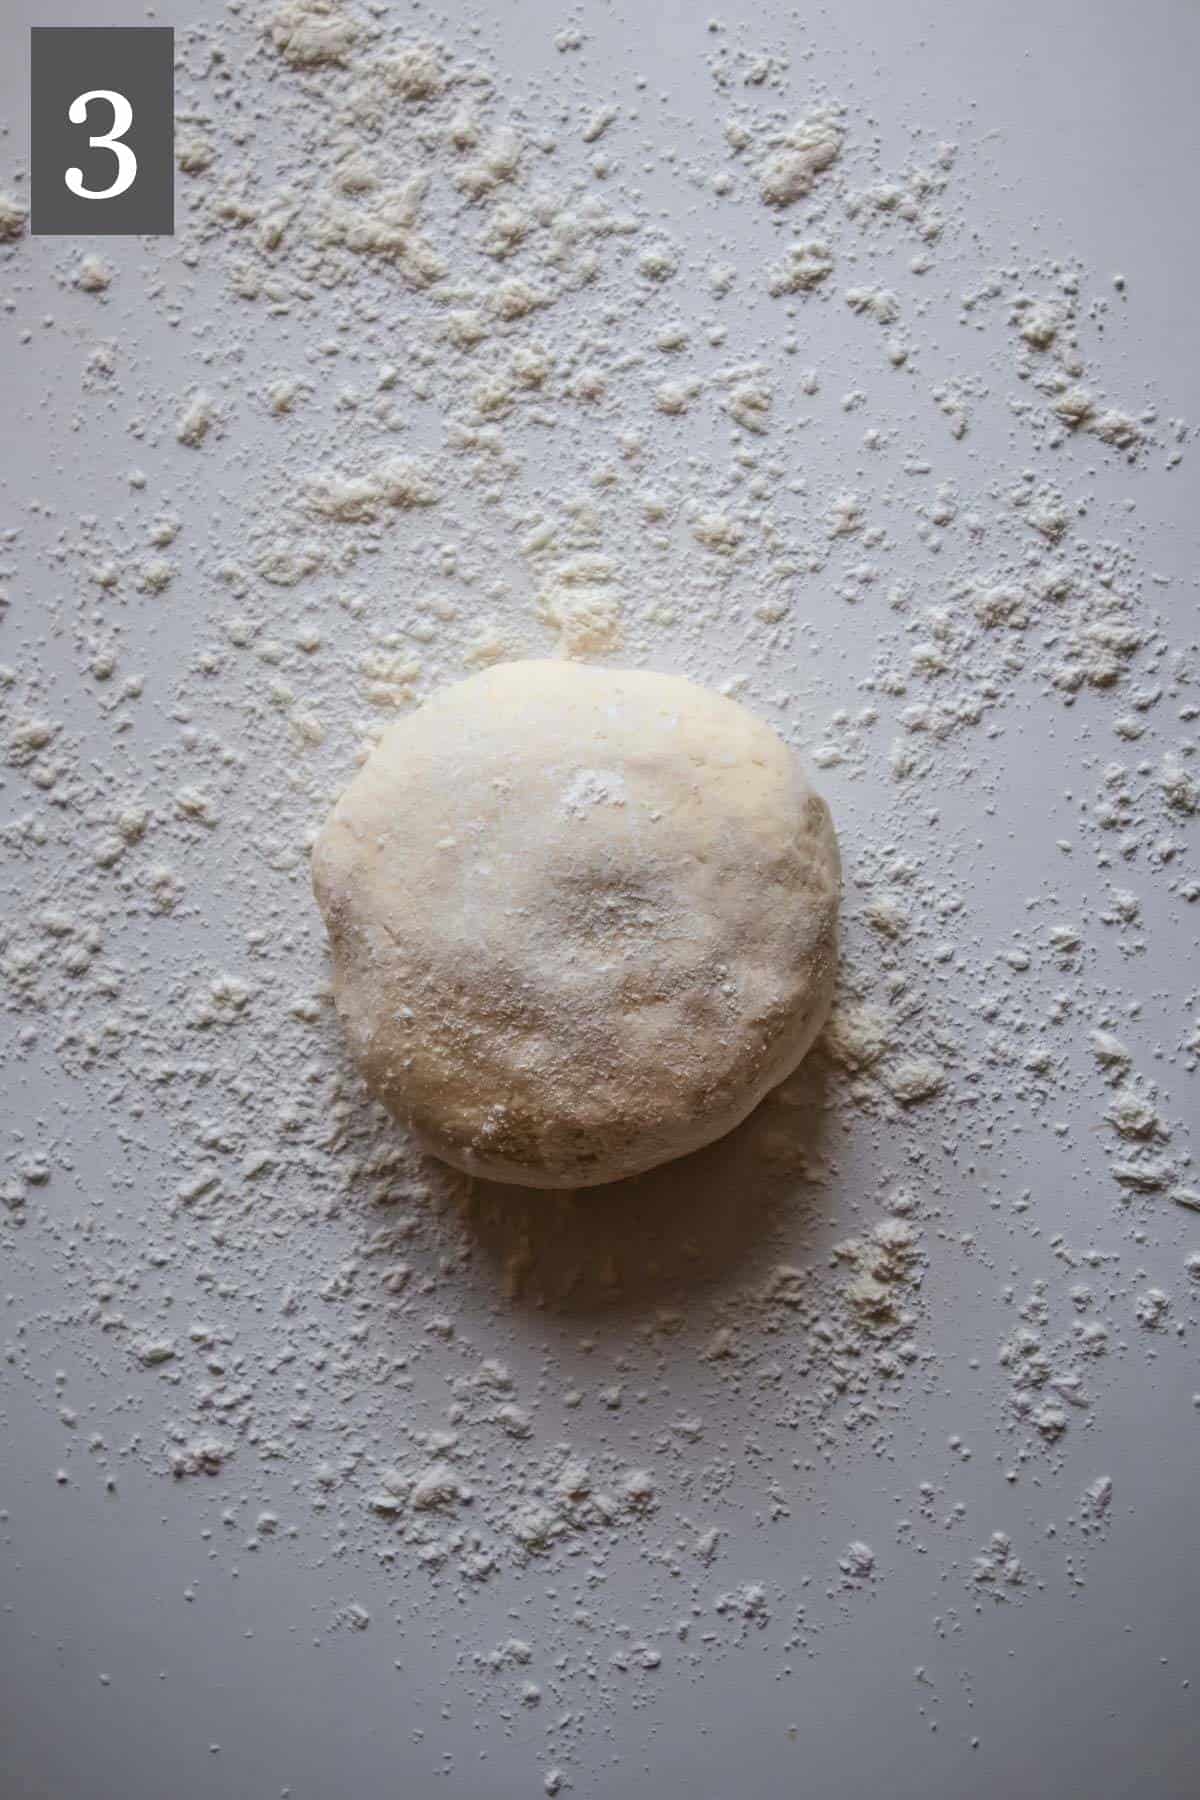 Pizza dough on a floured surface.